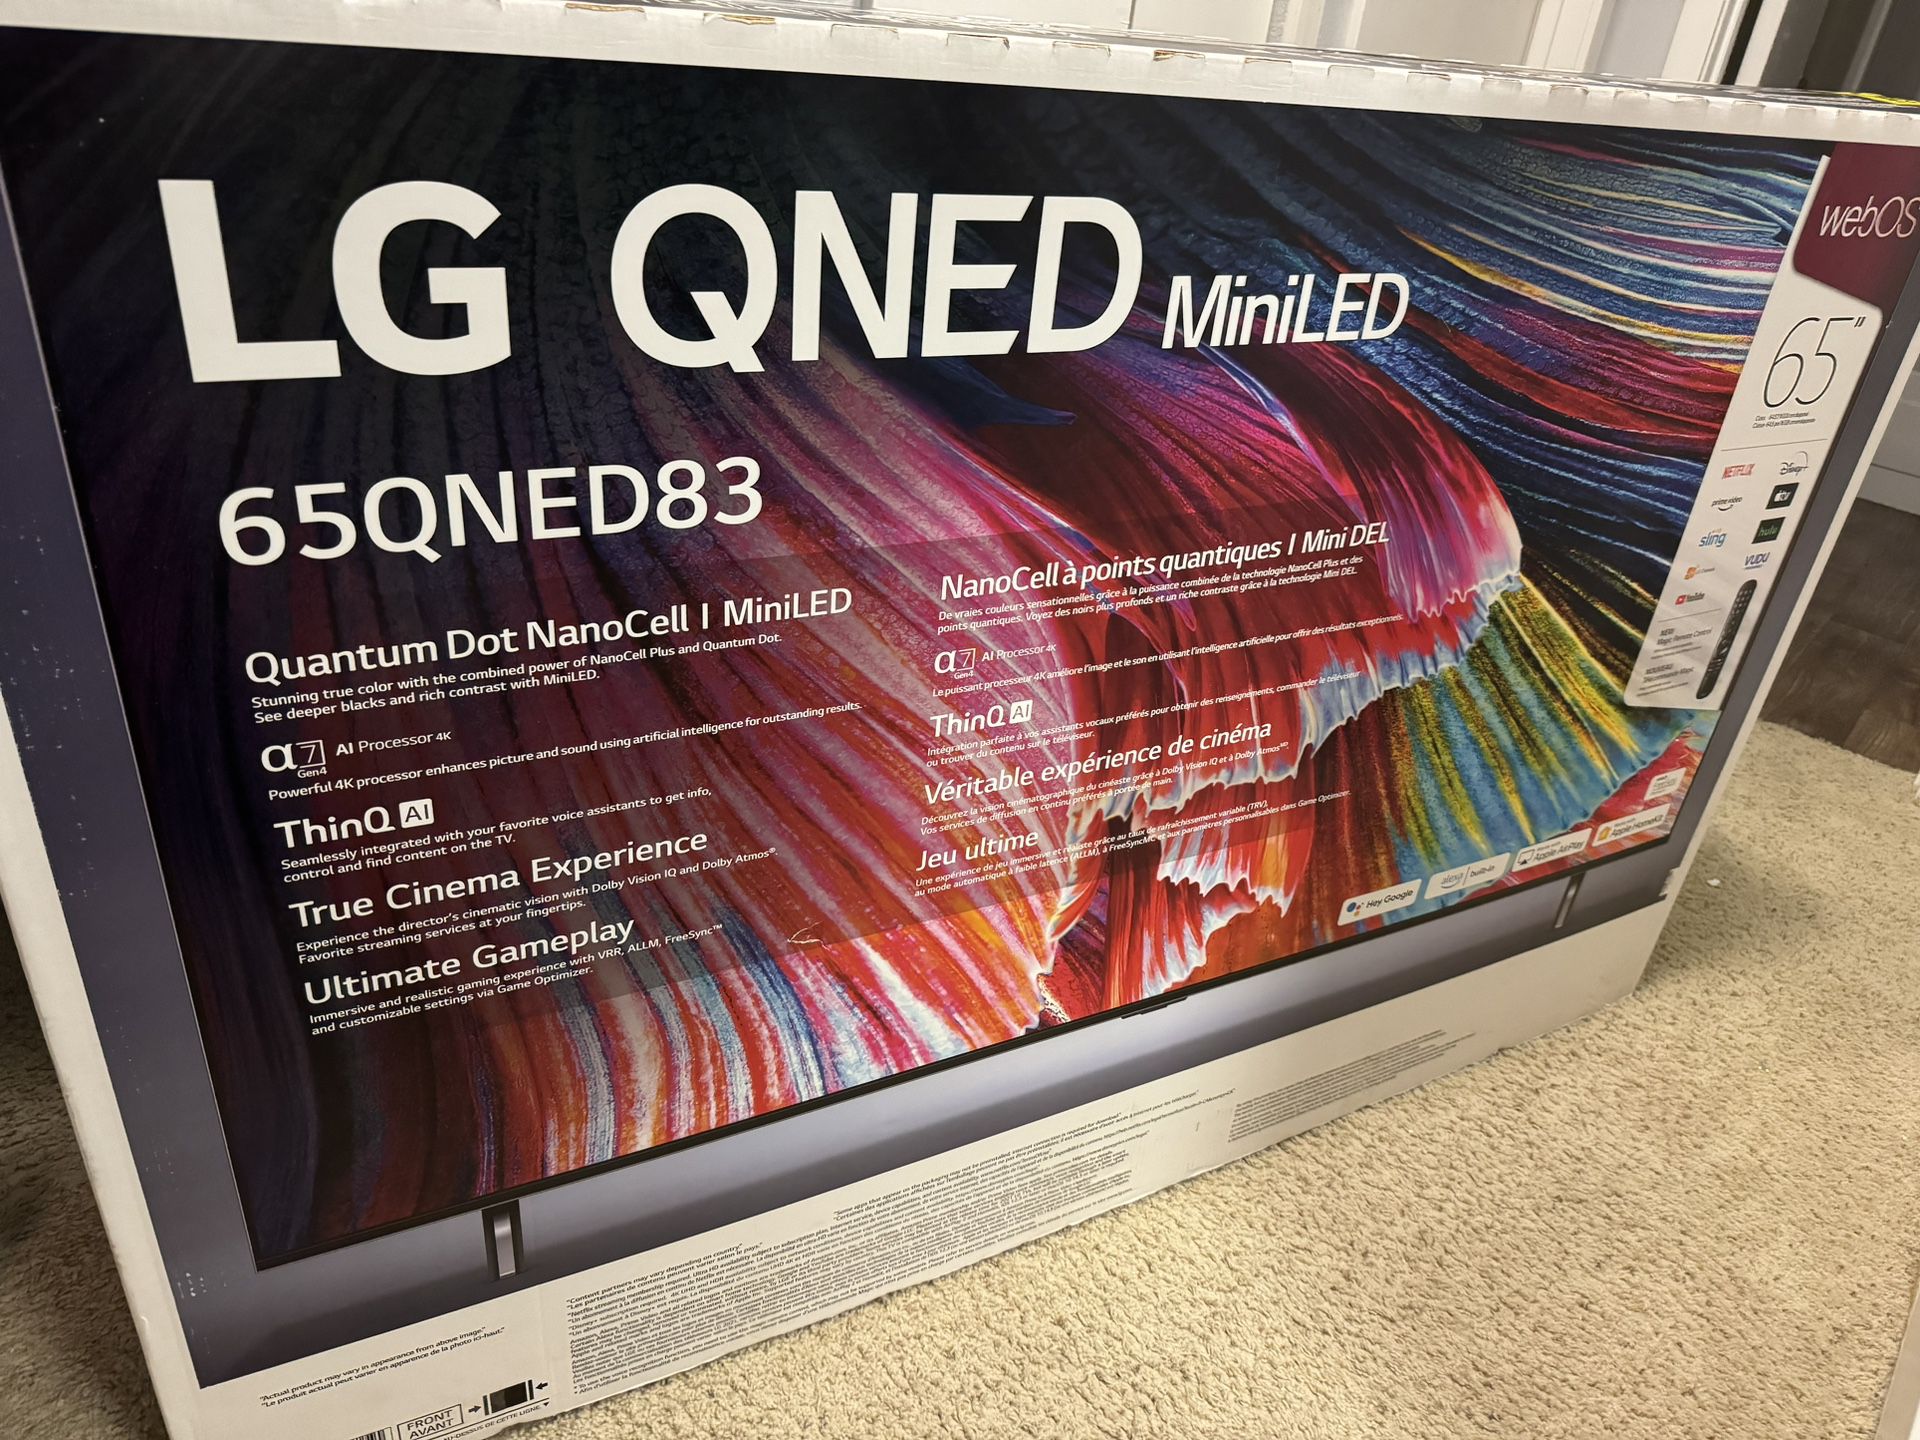 LG QNED MINI LED 65 INCH TV 